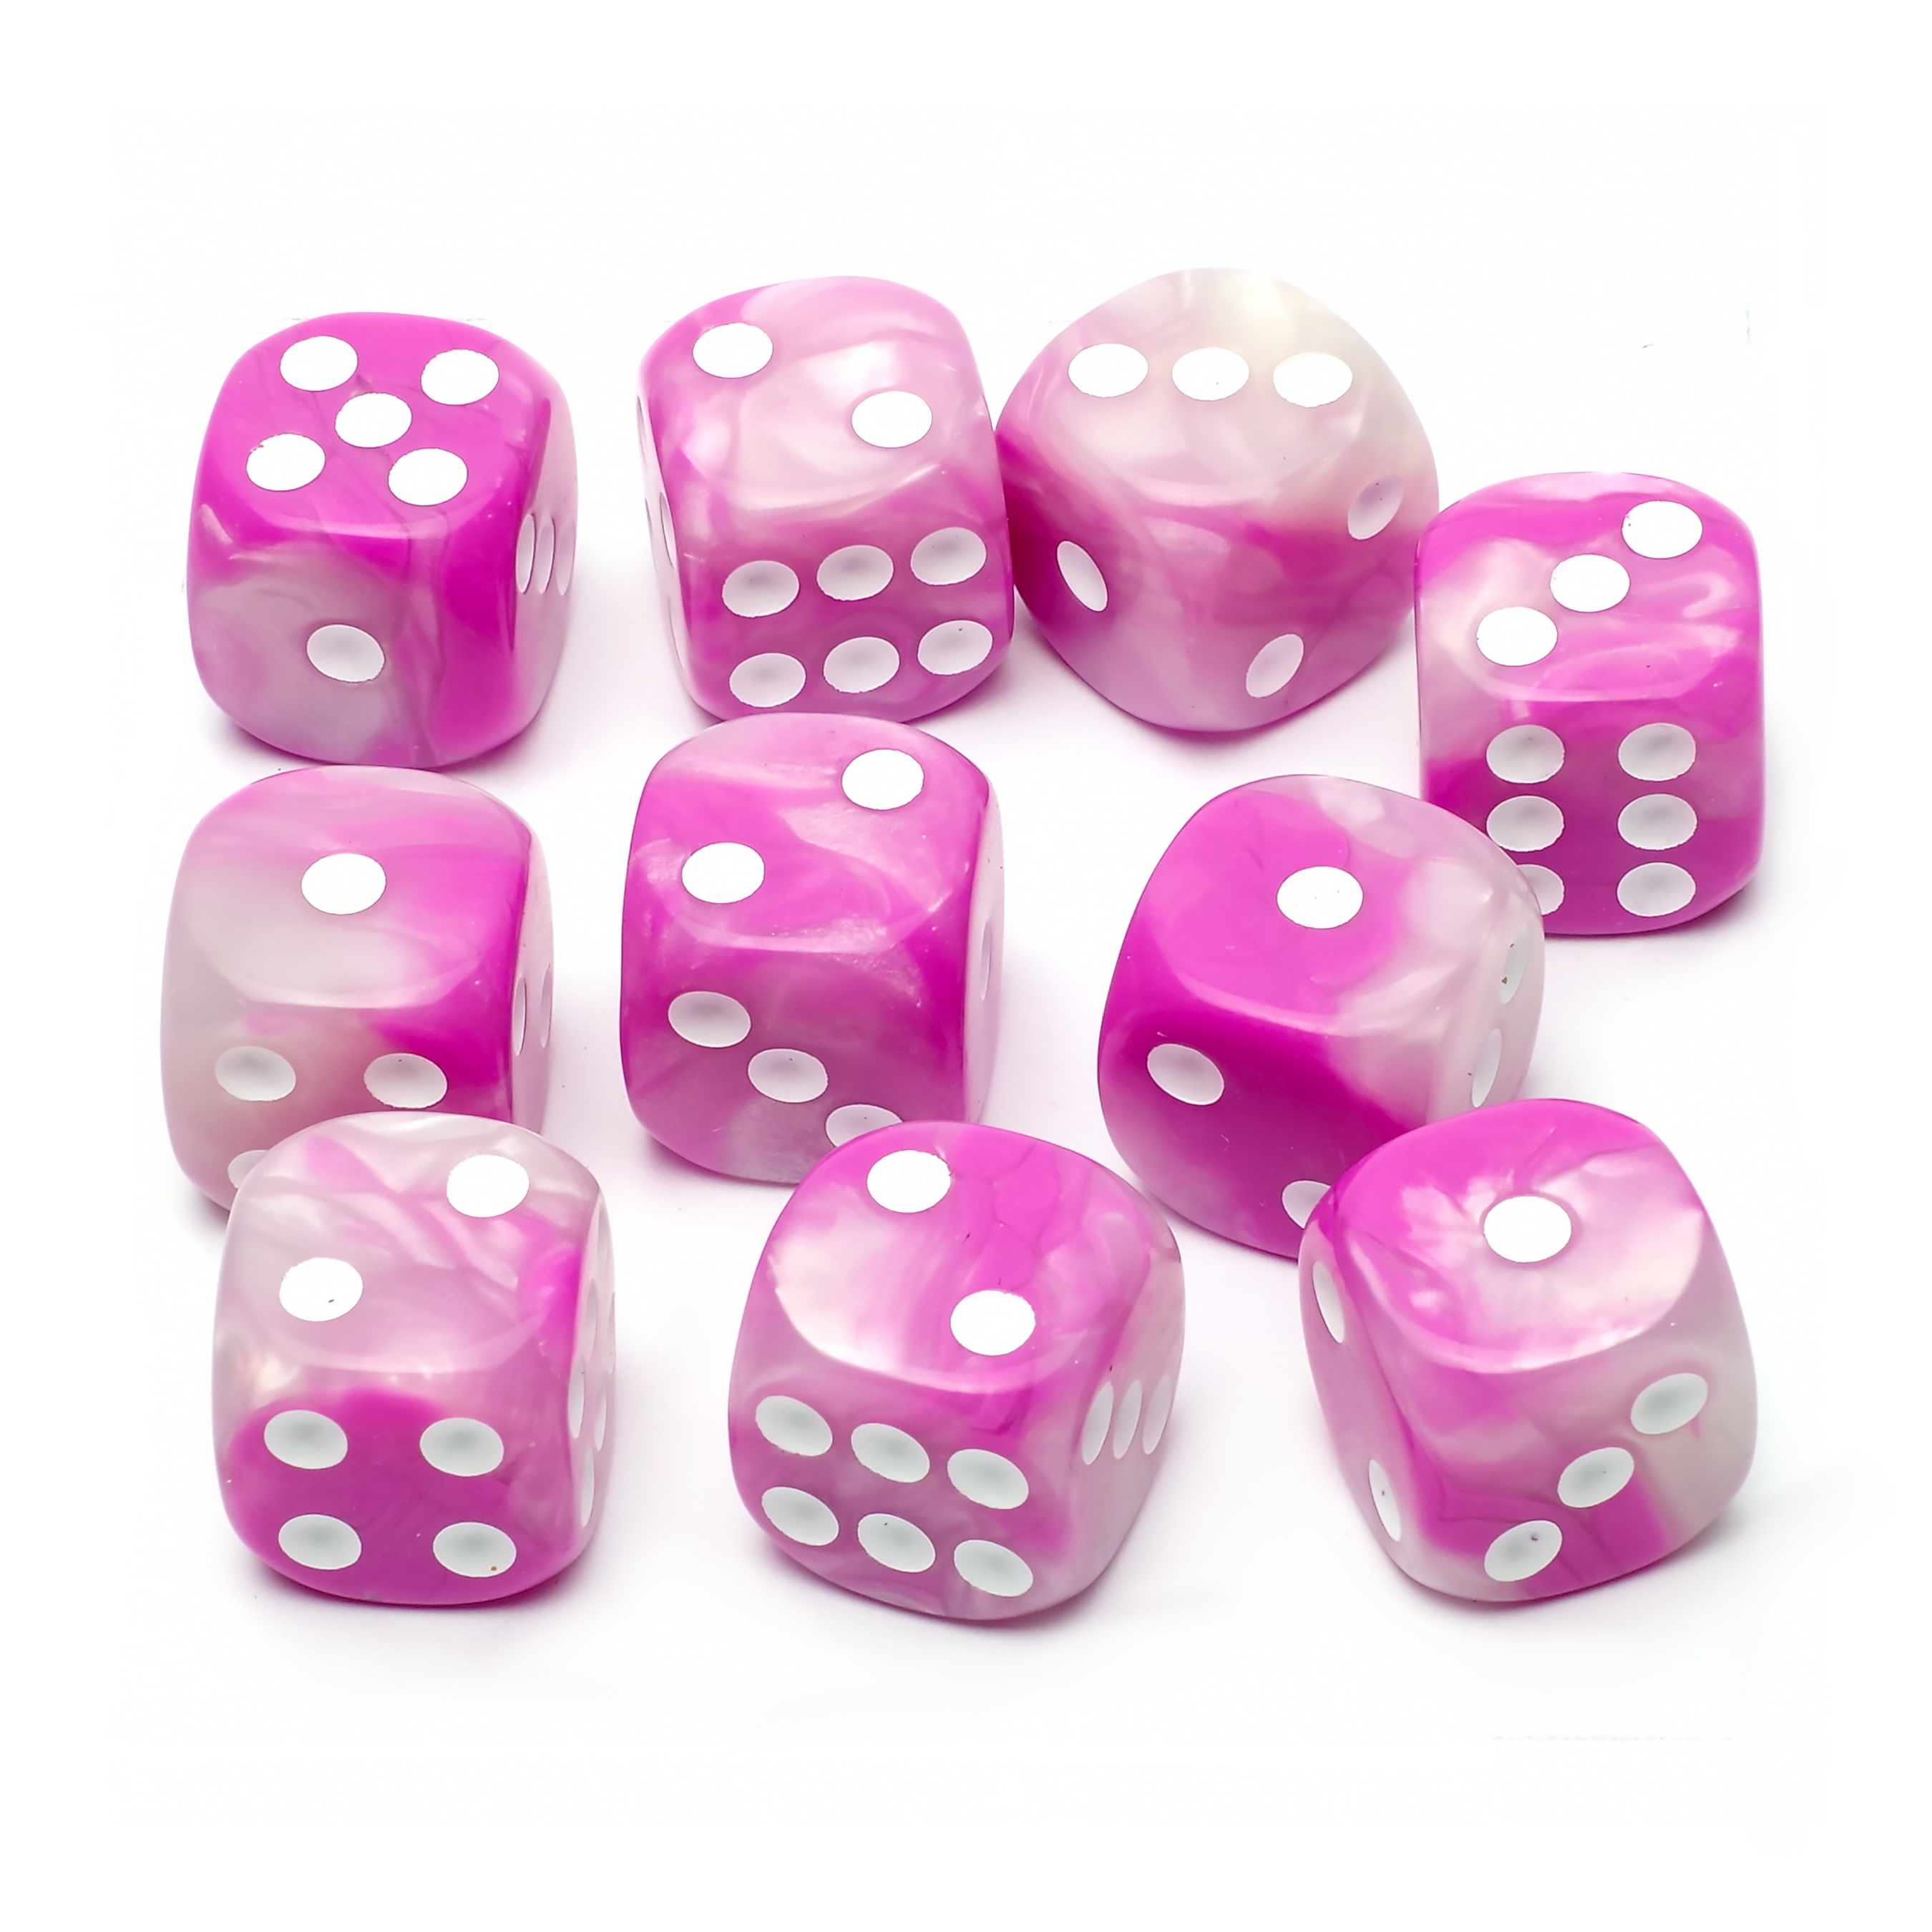 Набор кубиков STUFF-PRO d6, 10 шт, 16мм, бело-розовый набор игральных кубиков pandora box studio простые d6 16мм 12 шт сине белый